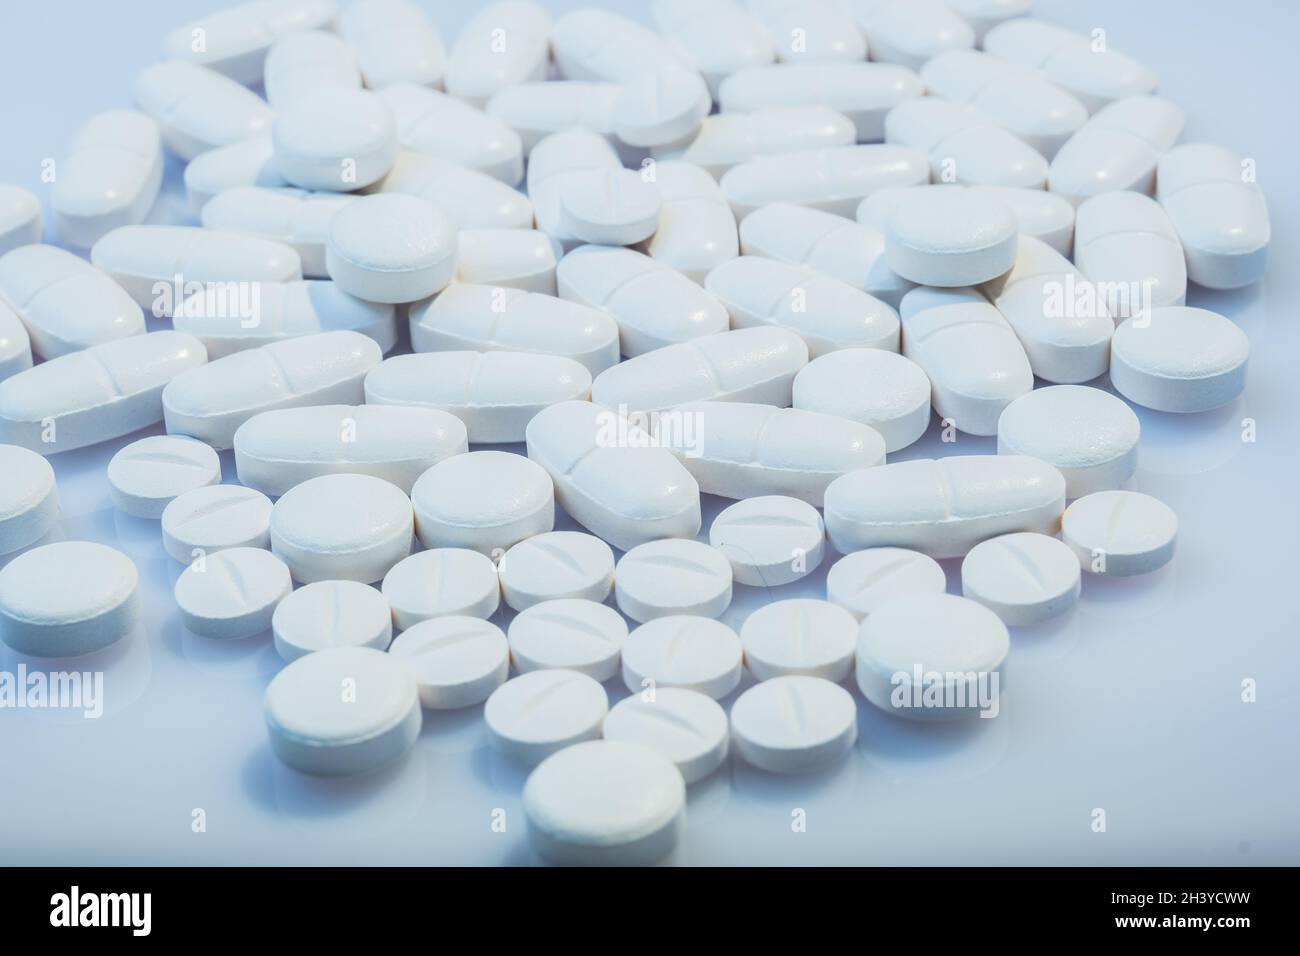 Helsinki / Finnland - 31. OKTOBER 2021: Nahaufnahme von weißen Pillen vor weißem Hintergrund. Stockfoto